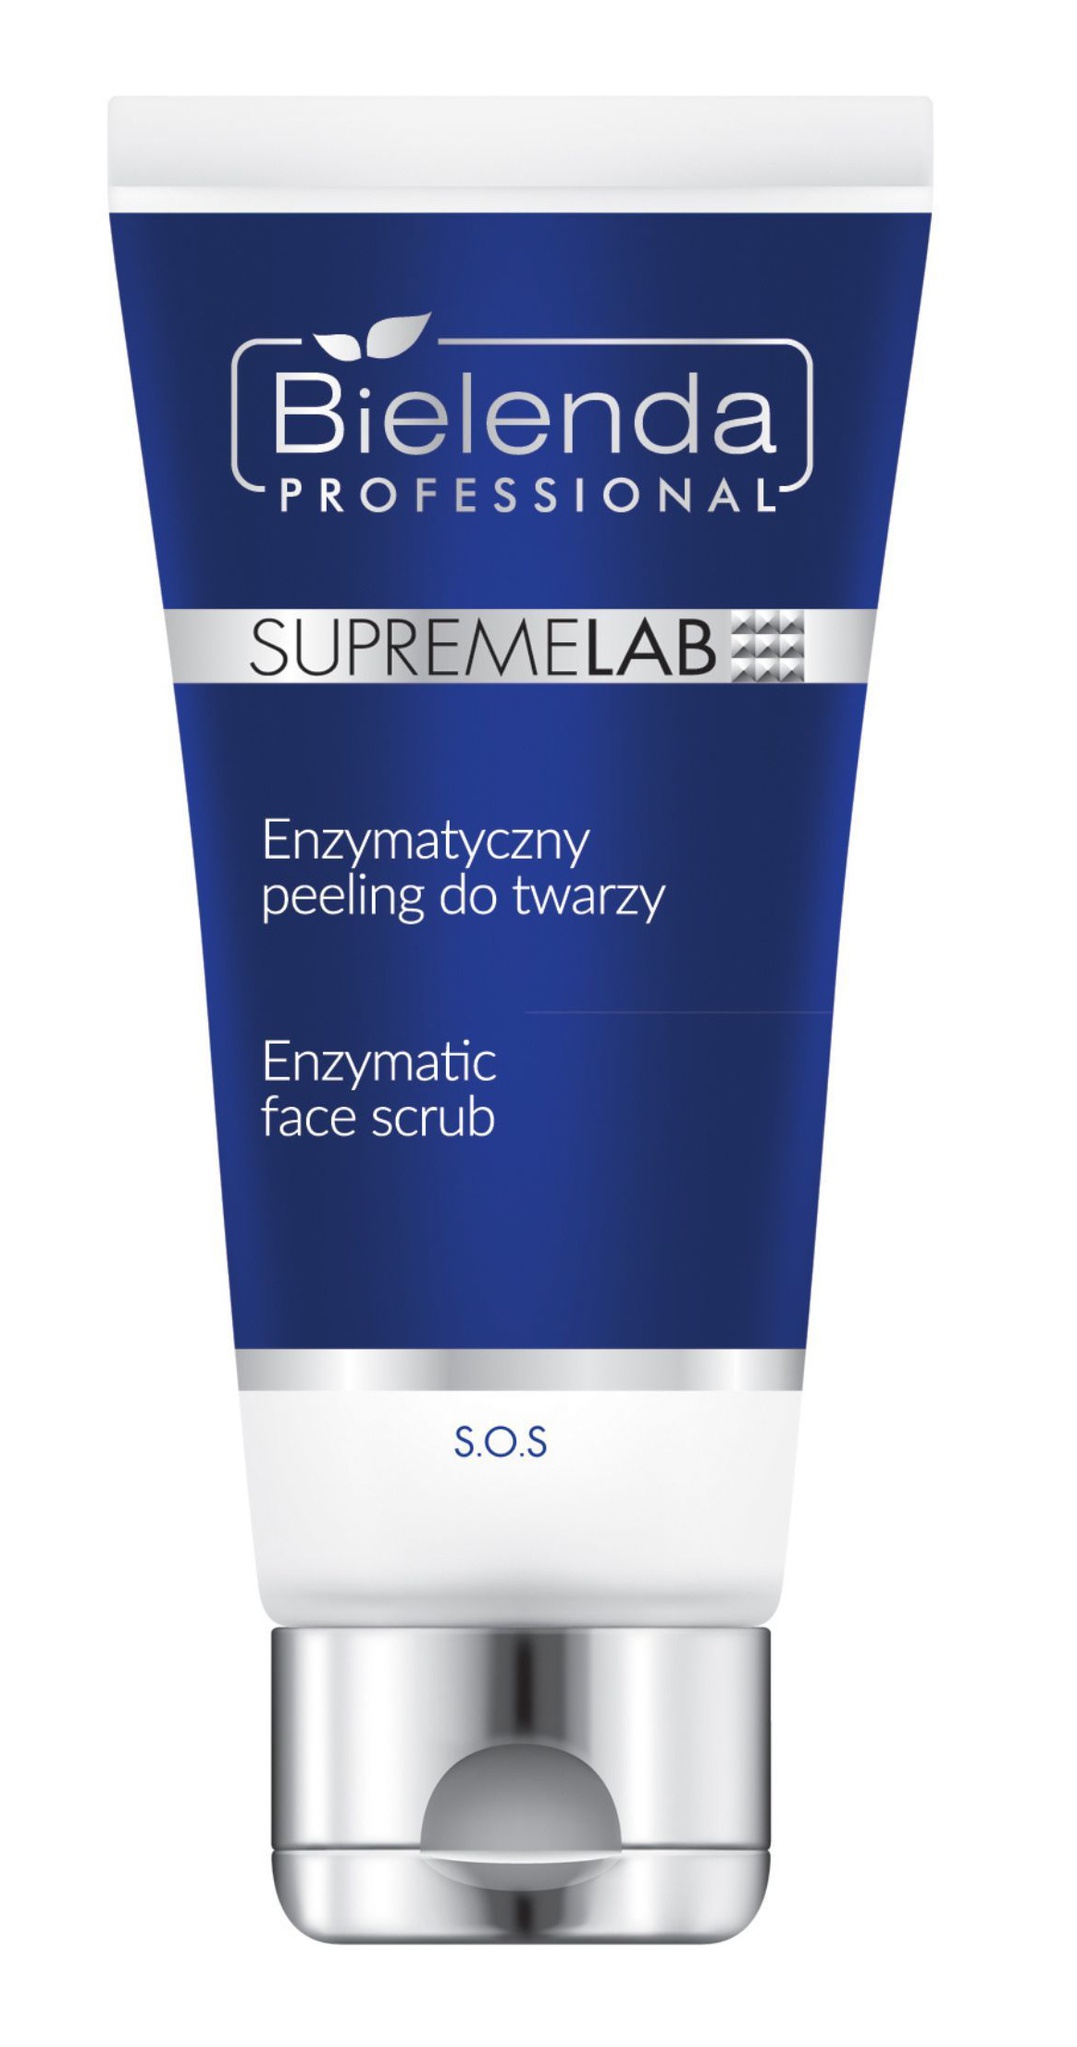 Bielenda Professional Supremelab SOS Enzymatic Face Scrub